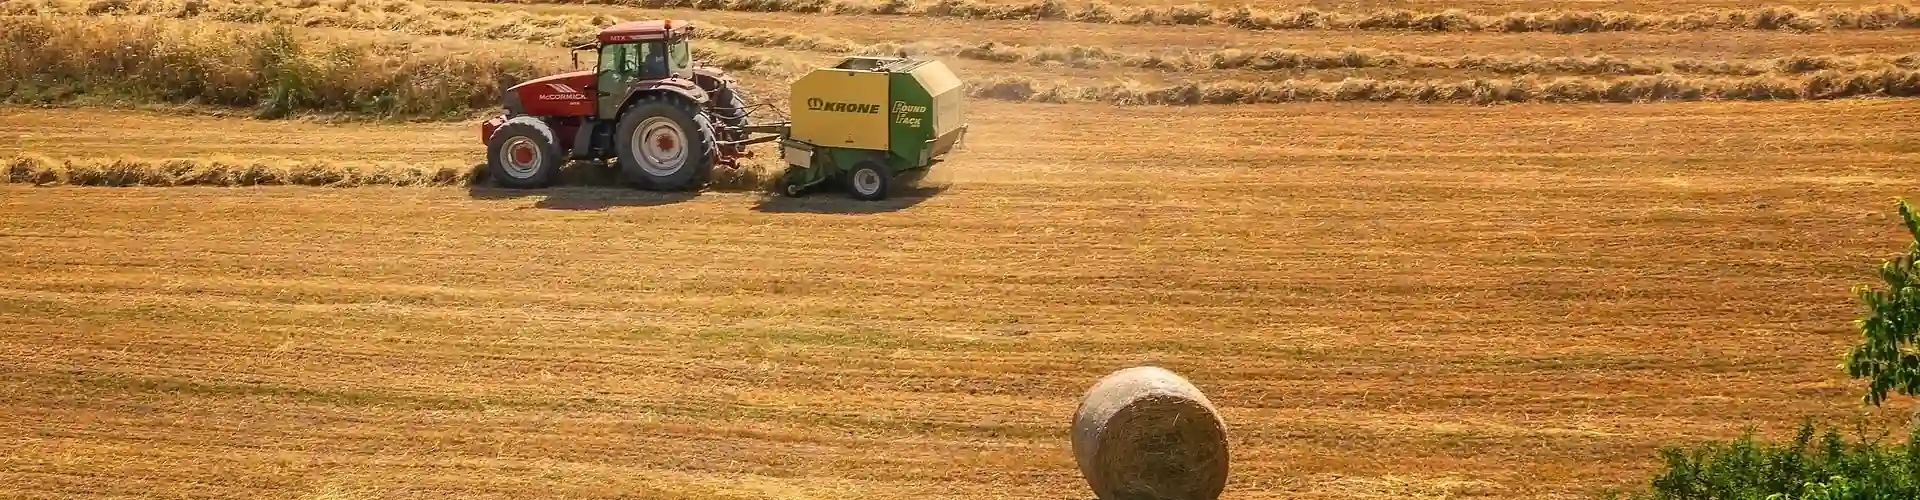 Forage harvesters, combines, tractors